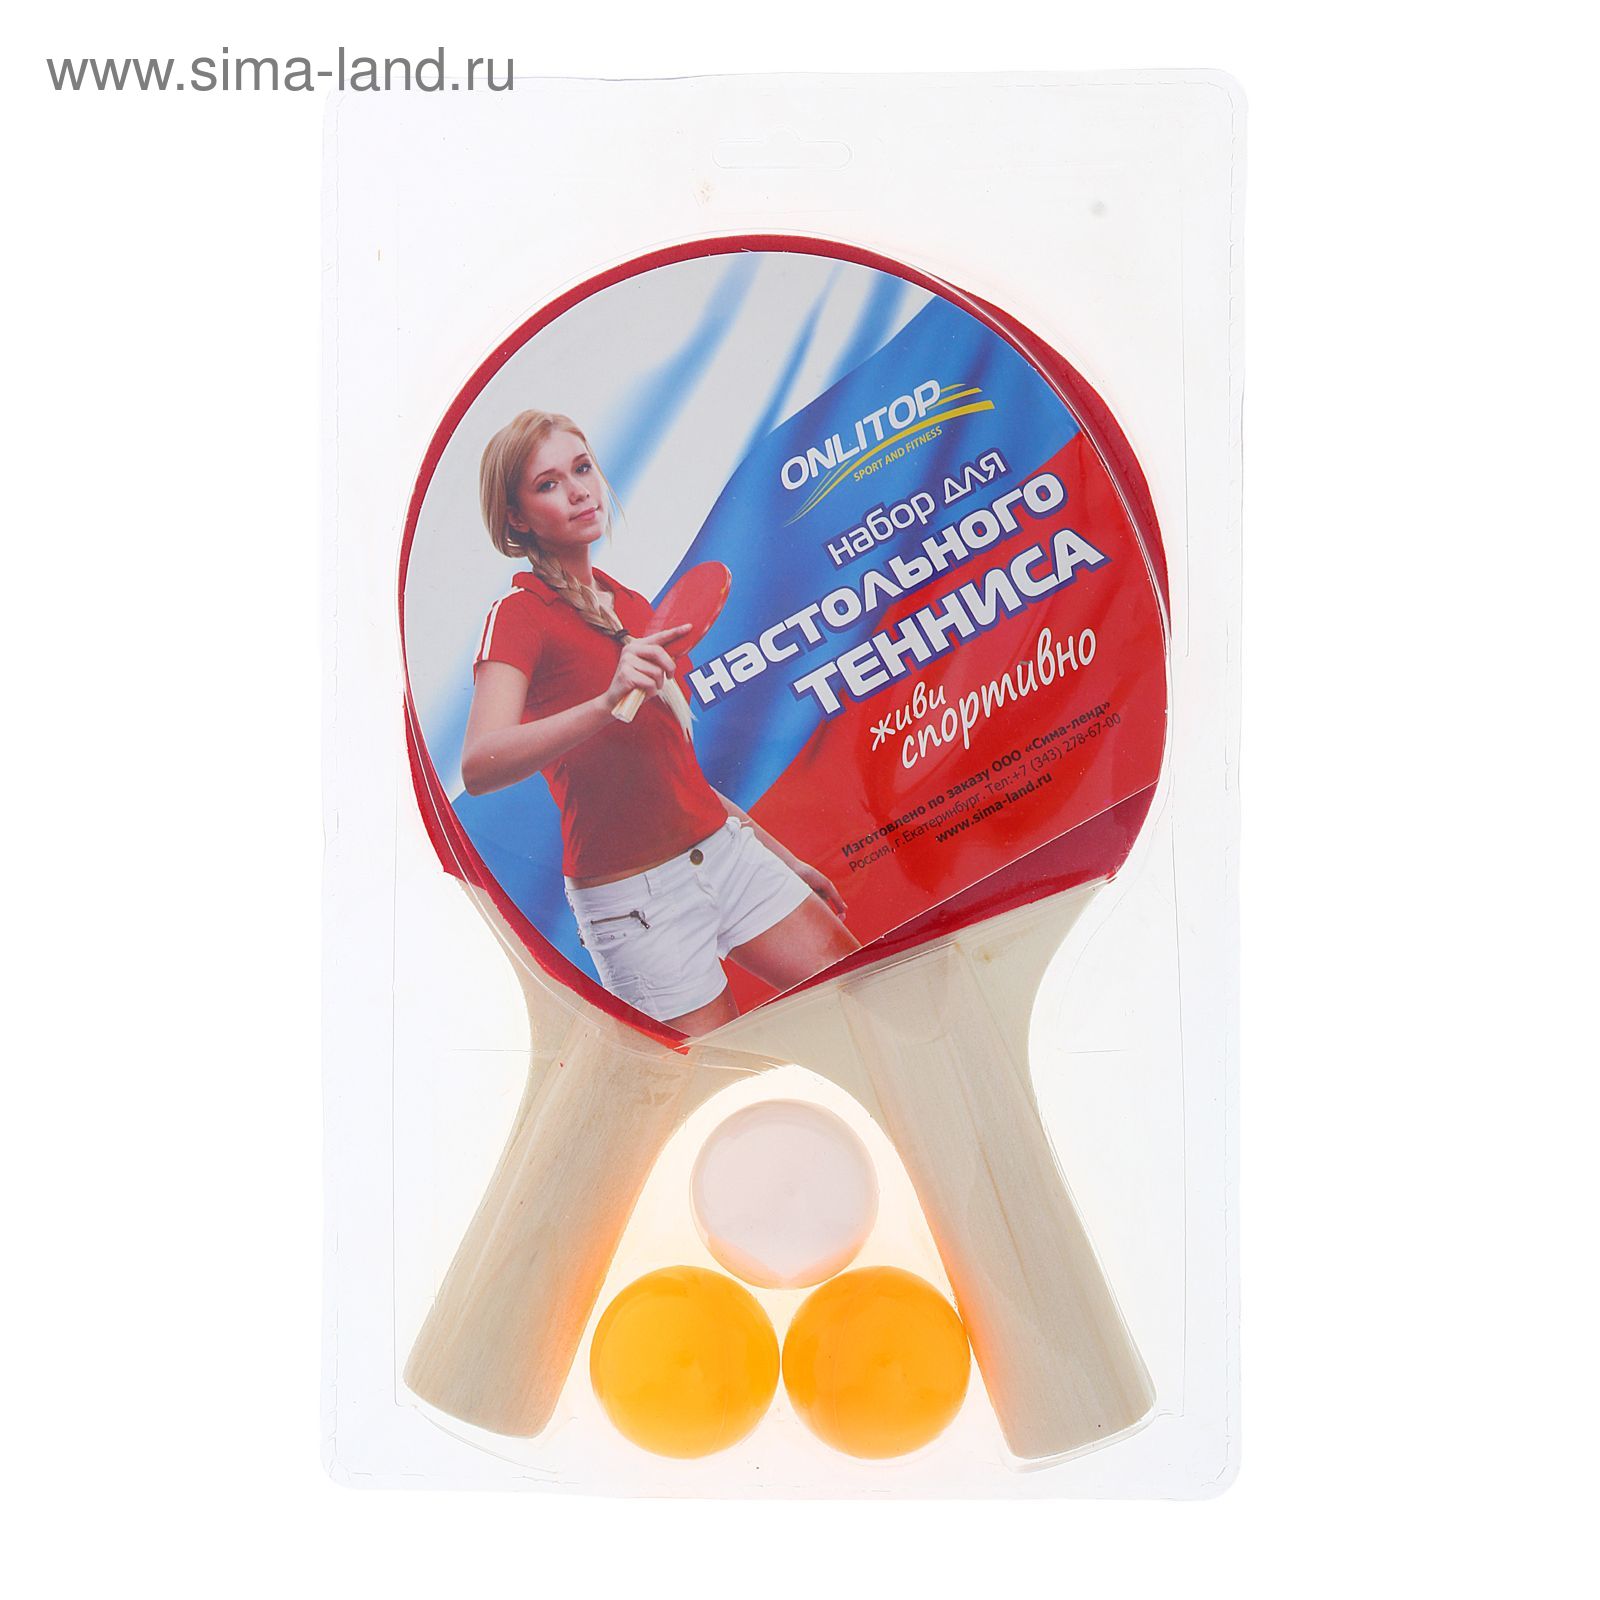 Набор для настольного тенниса "РОССИЯ", 2 ракетки, 3 мяча